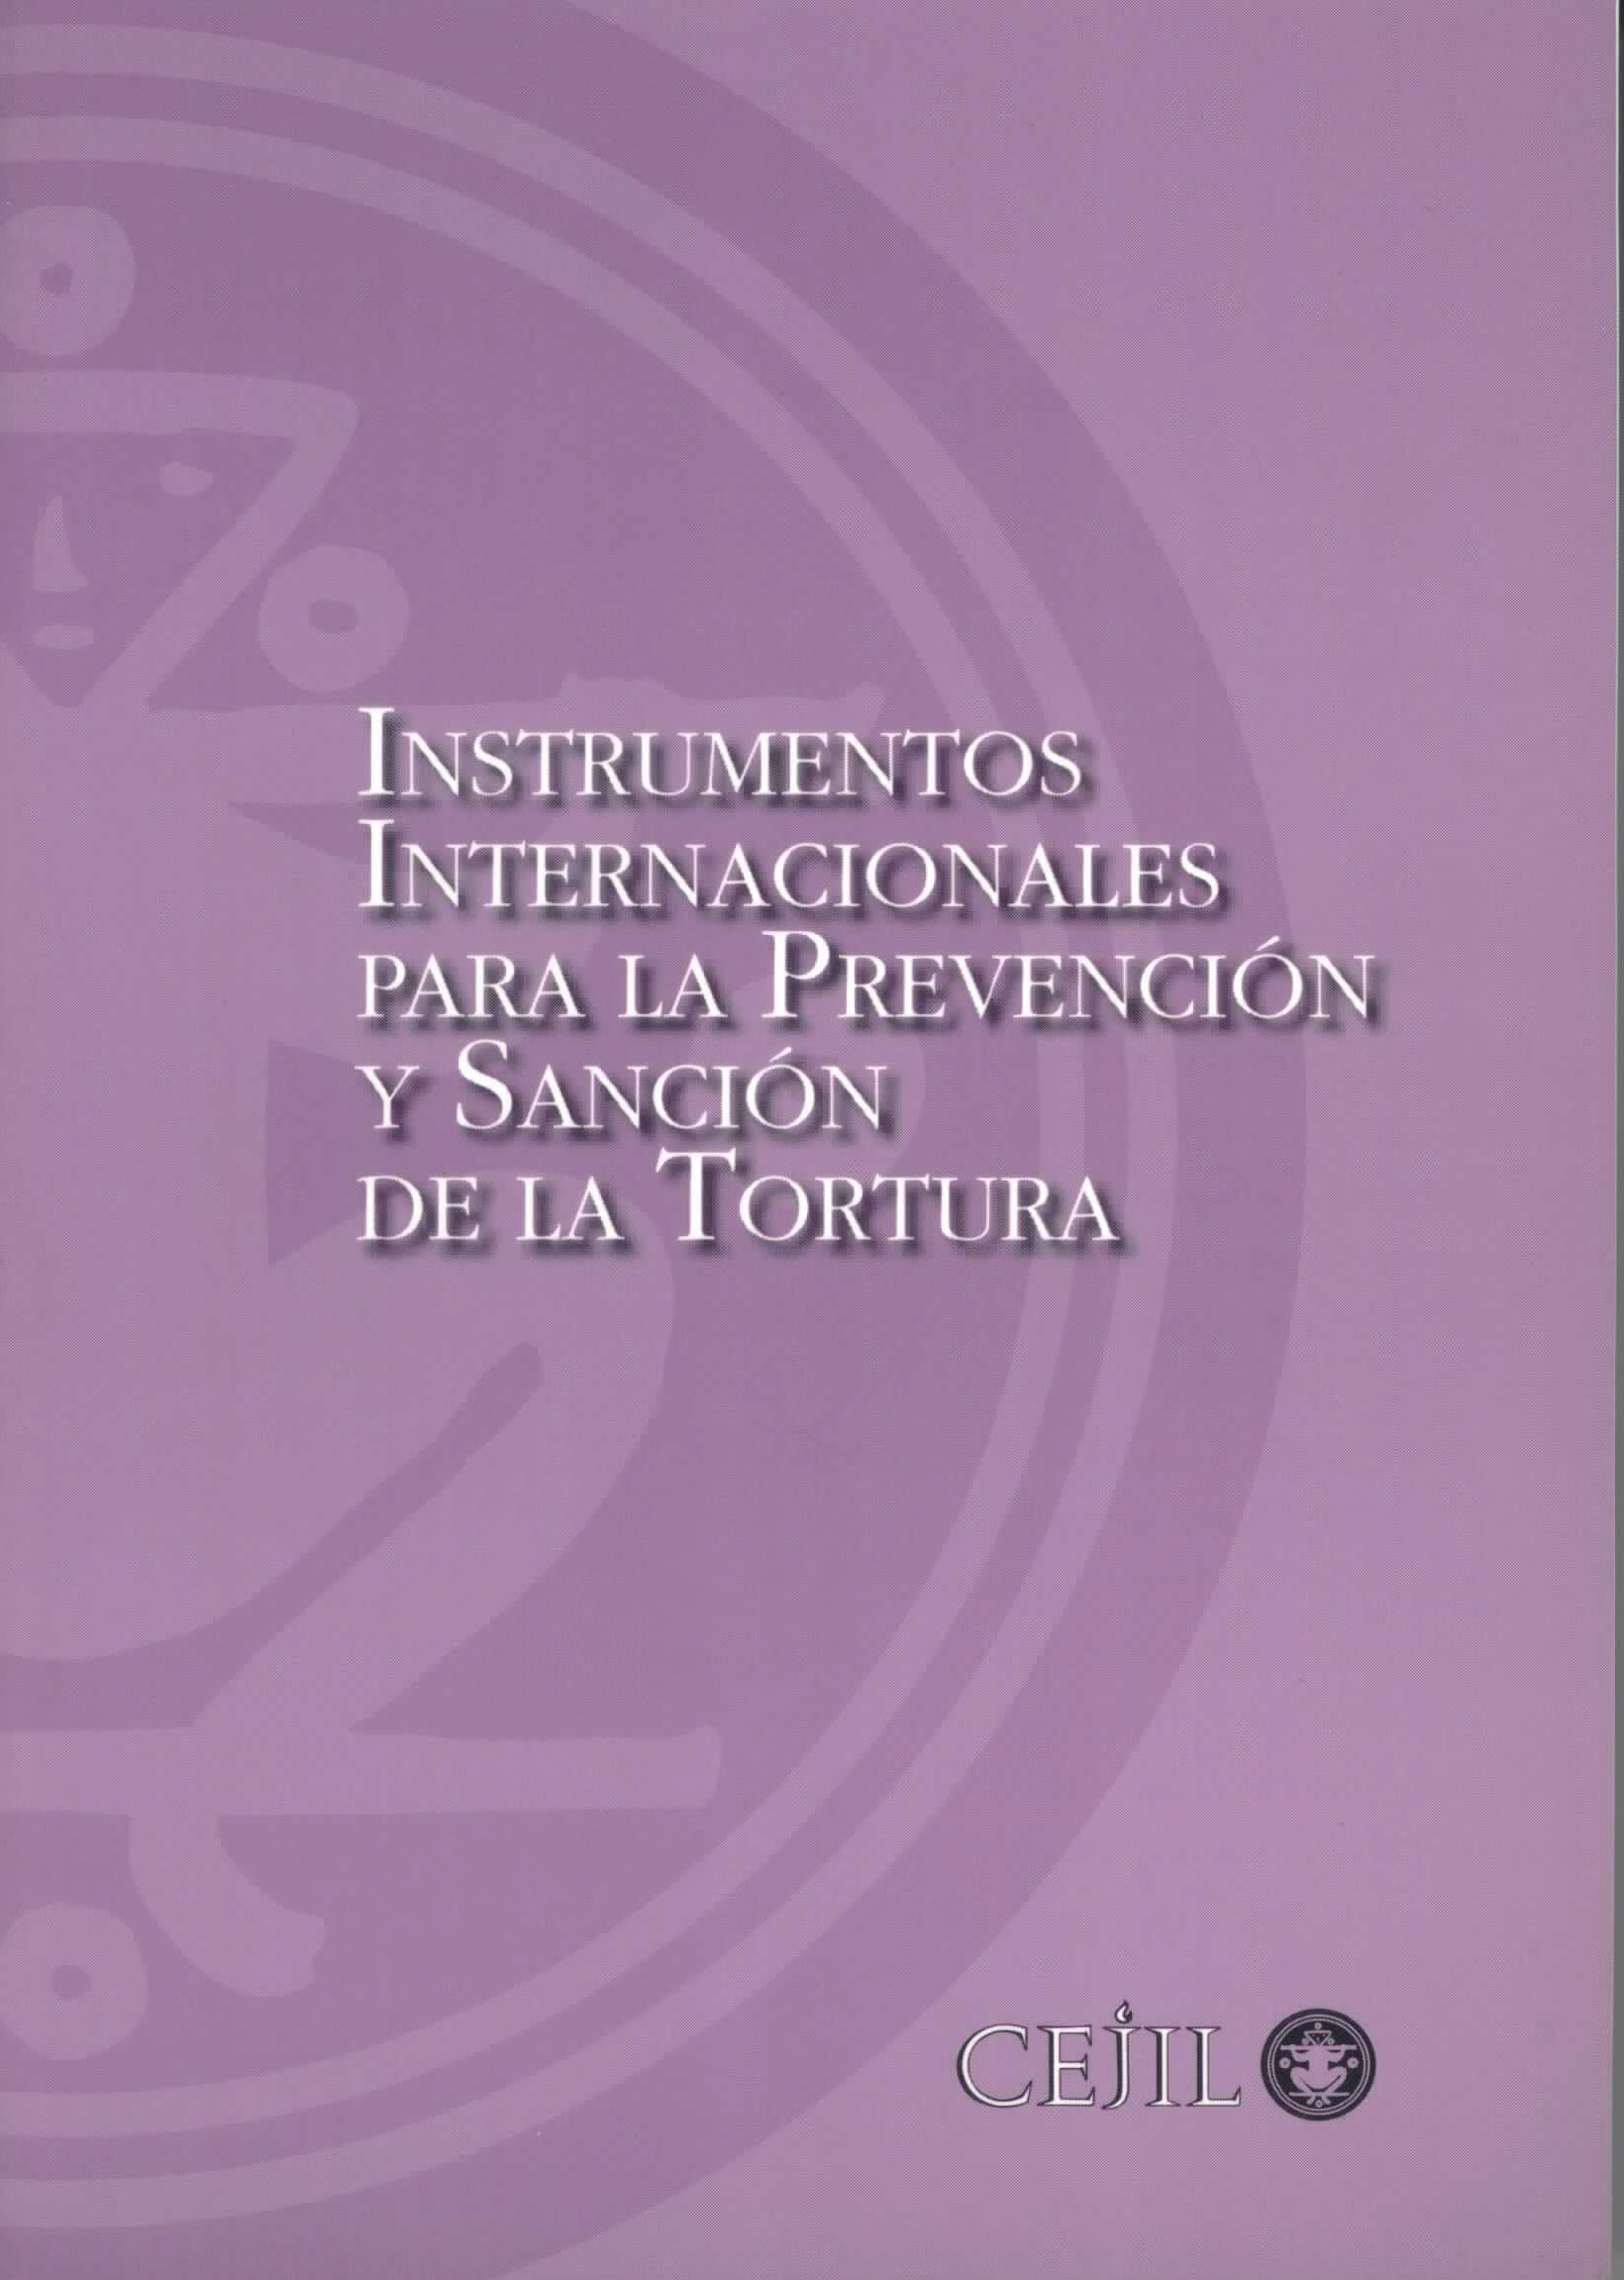 Instrumentos internacionales para la prevención y sanción de la tortura